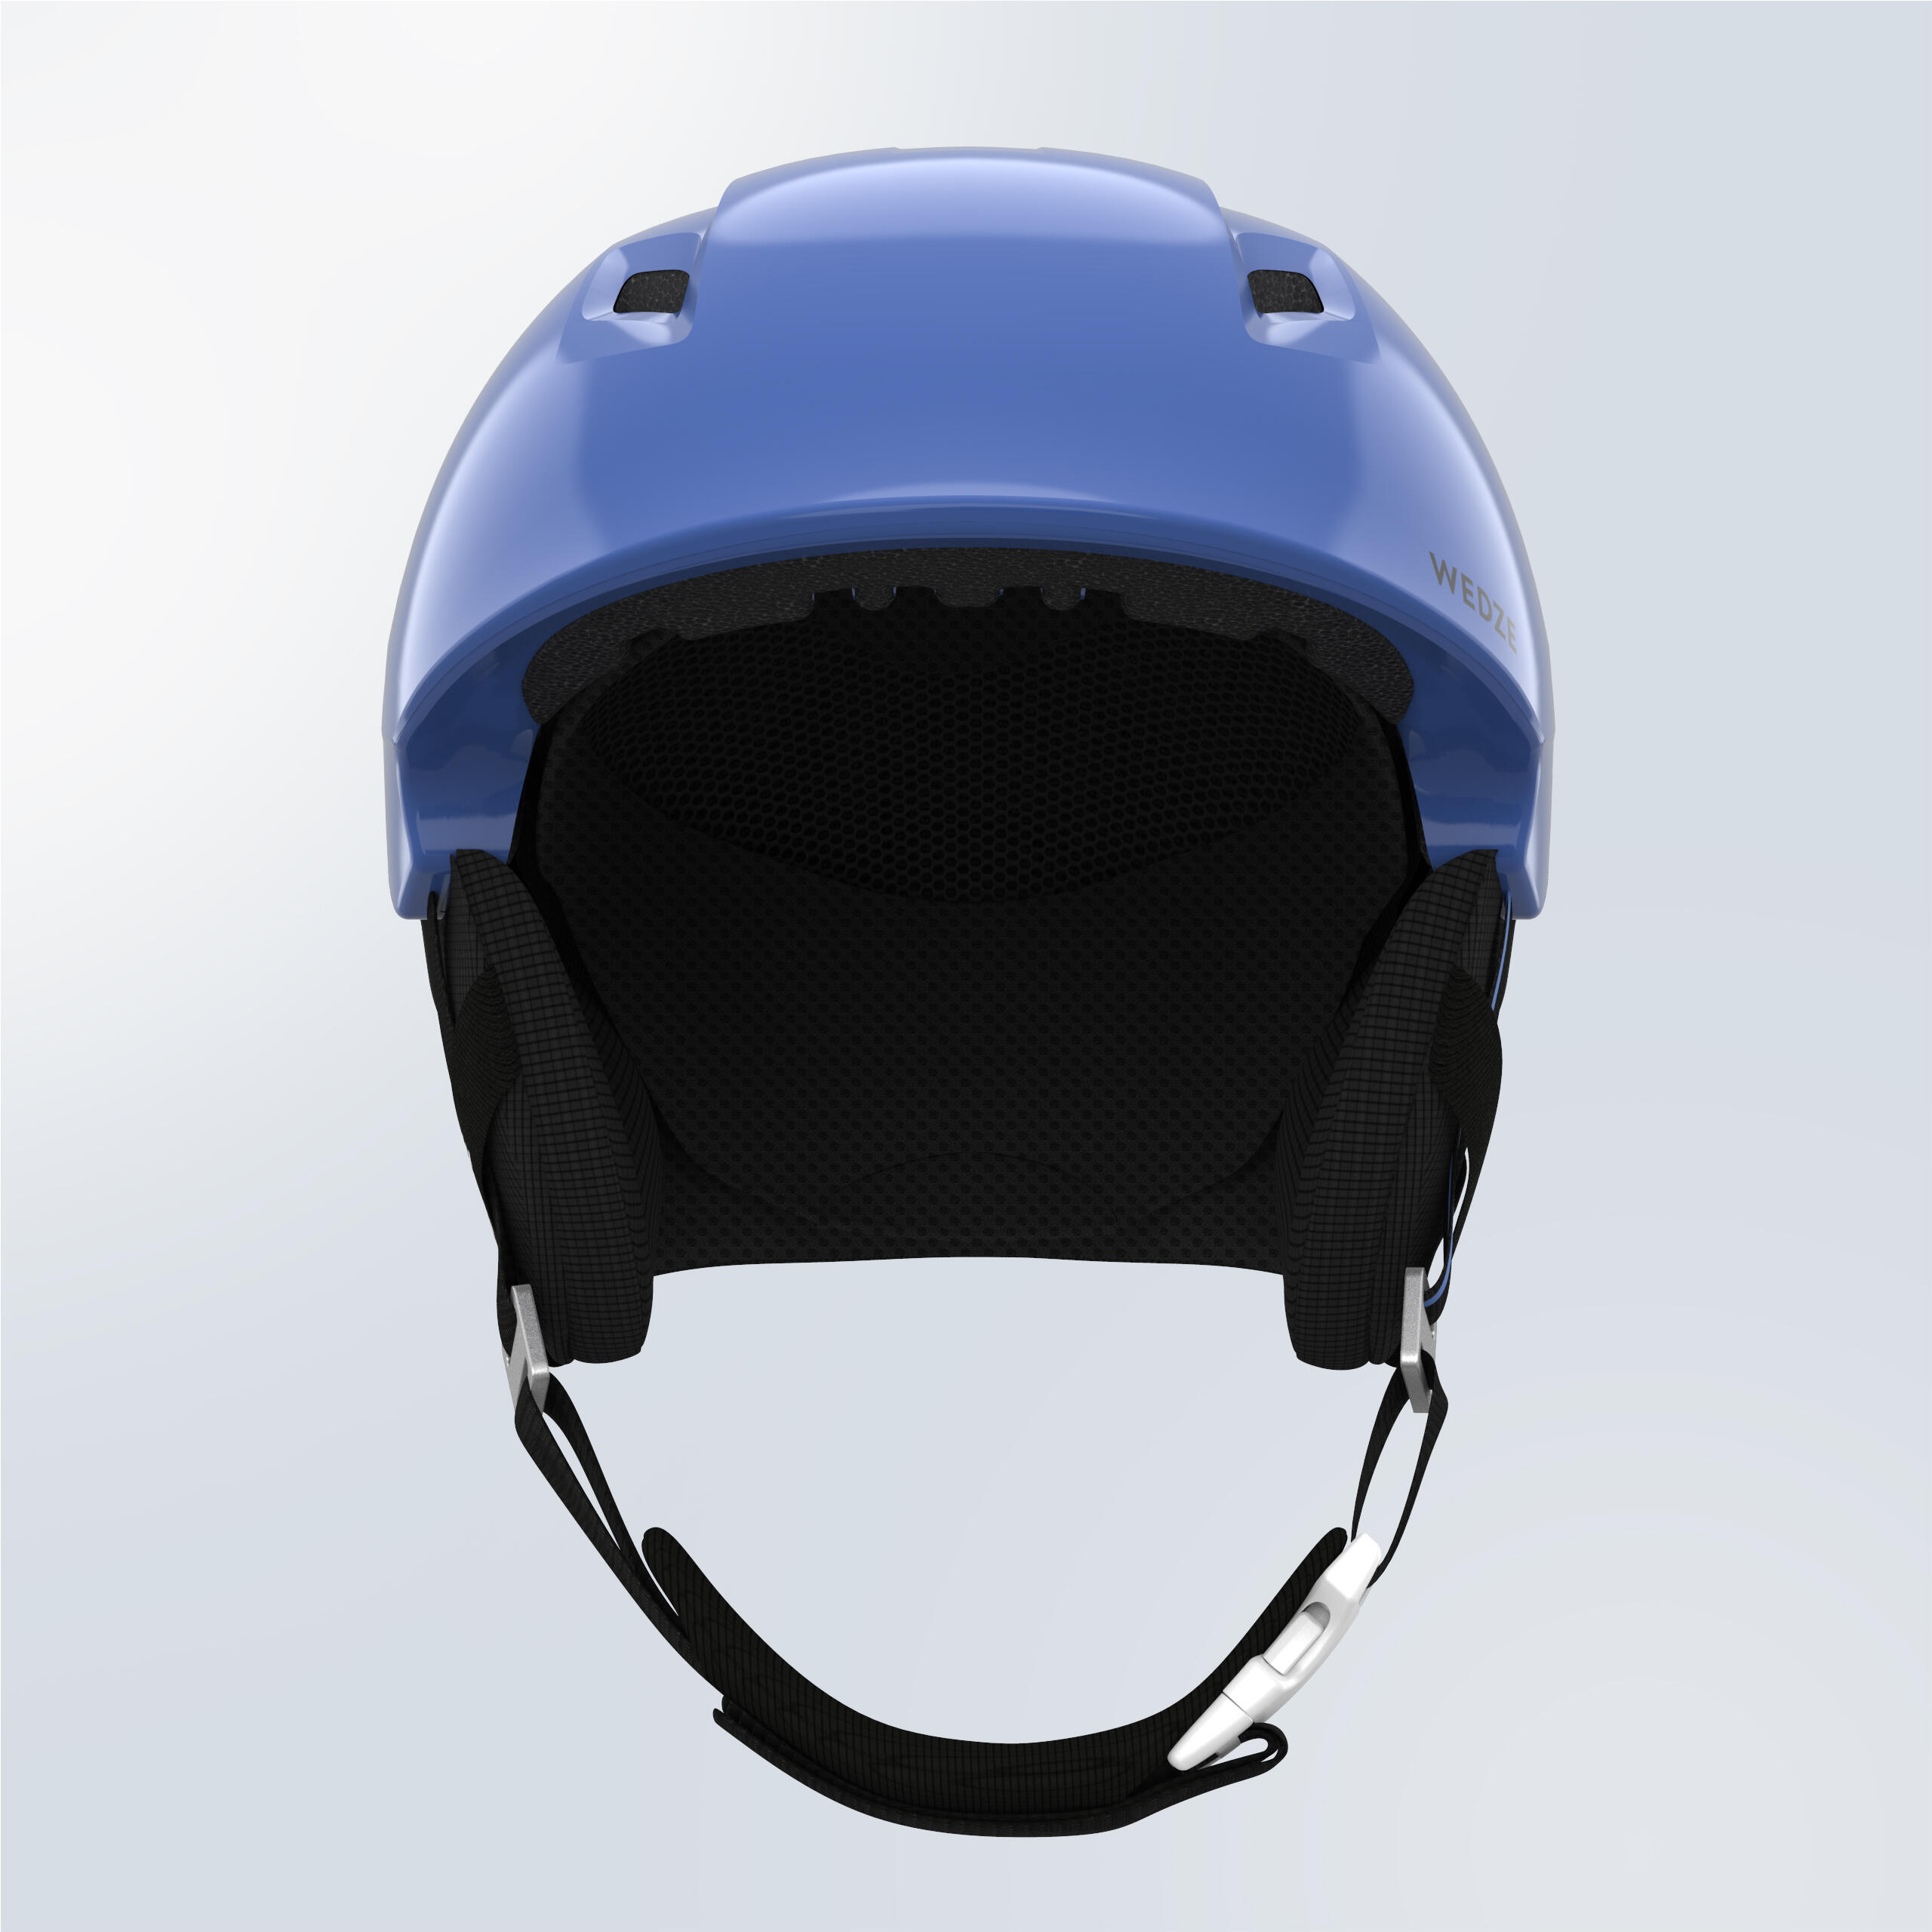 Adult ski helmet - PST 580 - Blue and black 2/7